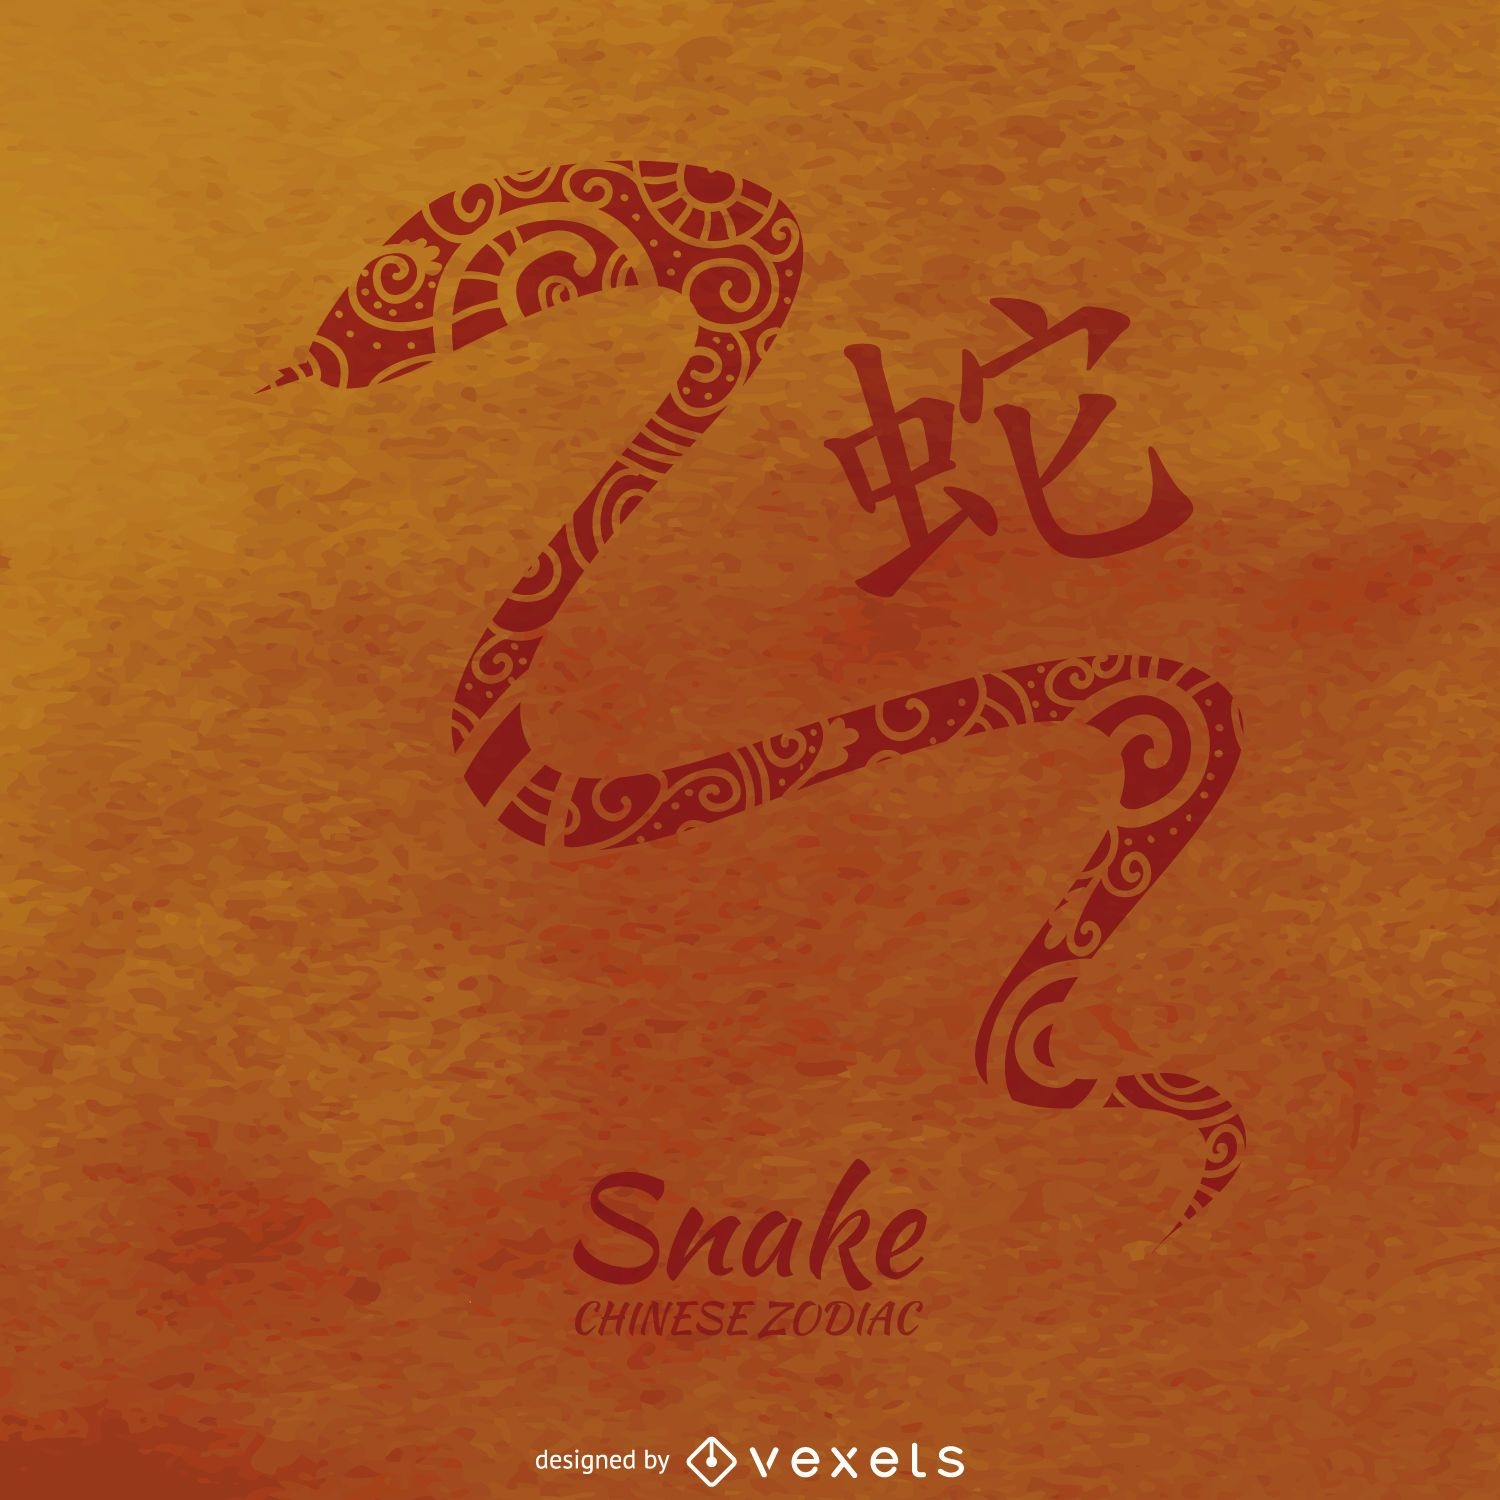 Ilustraci?n de serpiente del zodiaco chino